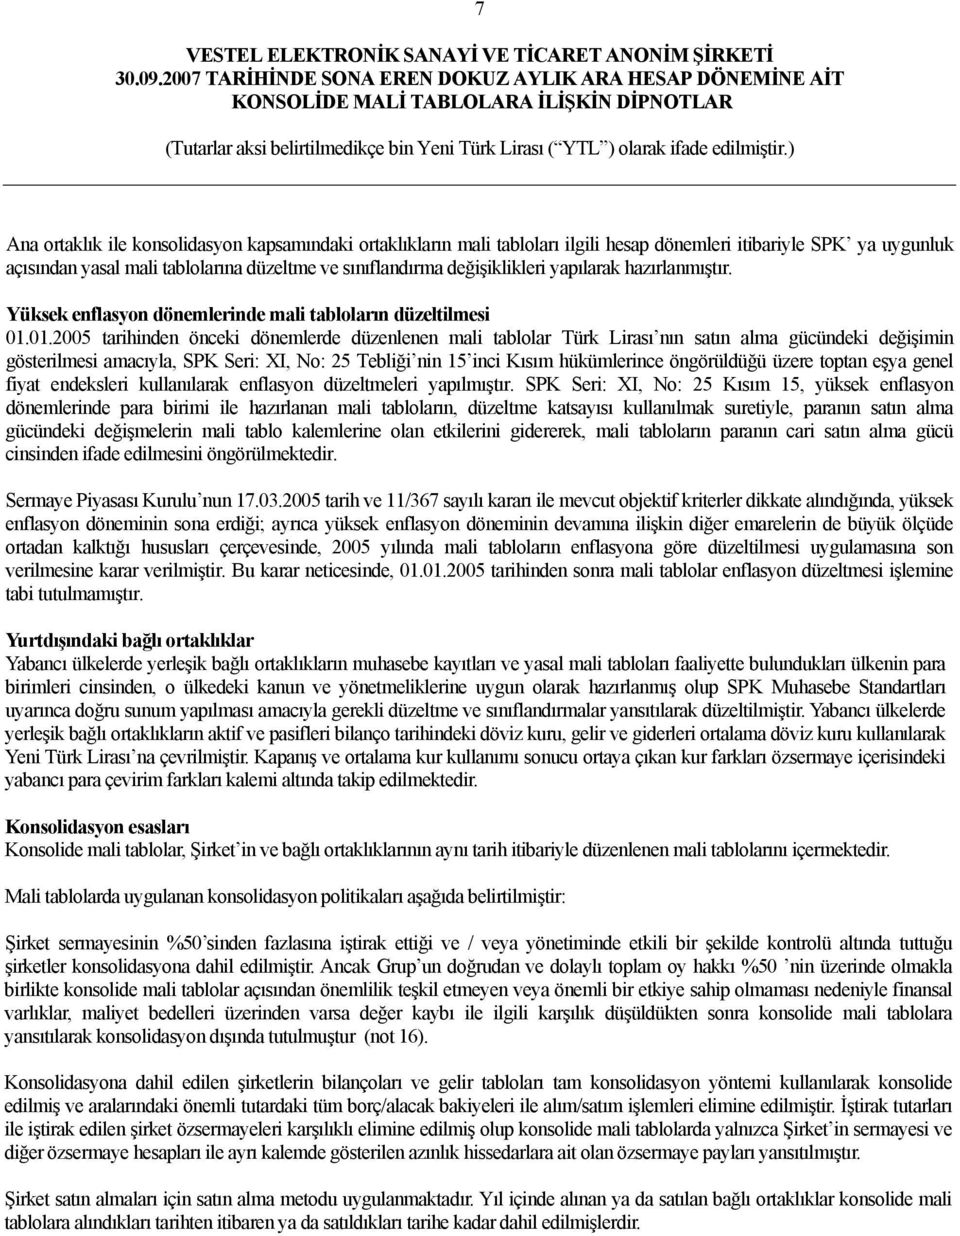 01.2005 tarihinden önceki dönemlerde düzenlenen mali tablolar Türk Lirası nın satın alma gücündeki değişimin gösterilmesi amacıyla, SPK Seri: XI, No: 25 Tebliği nin 15 inci Kısım hükümlerince